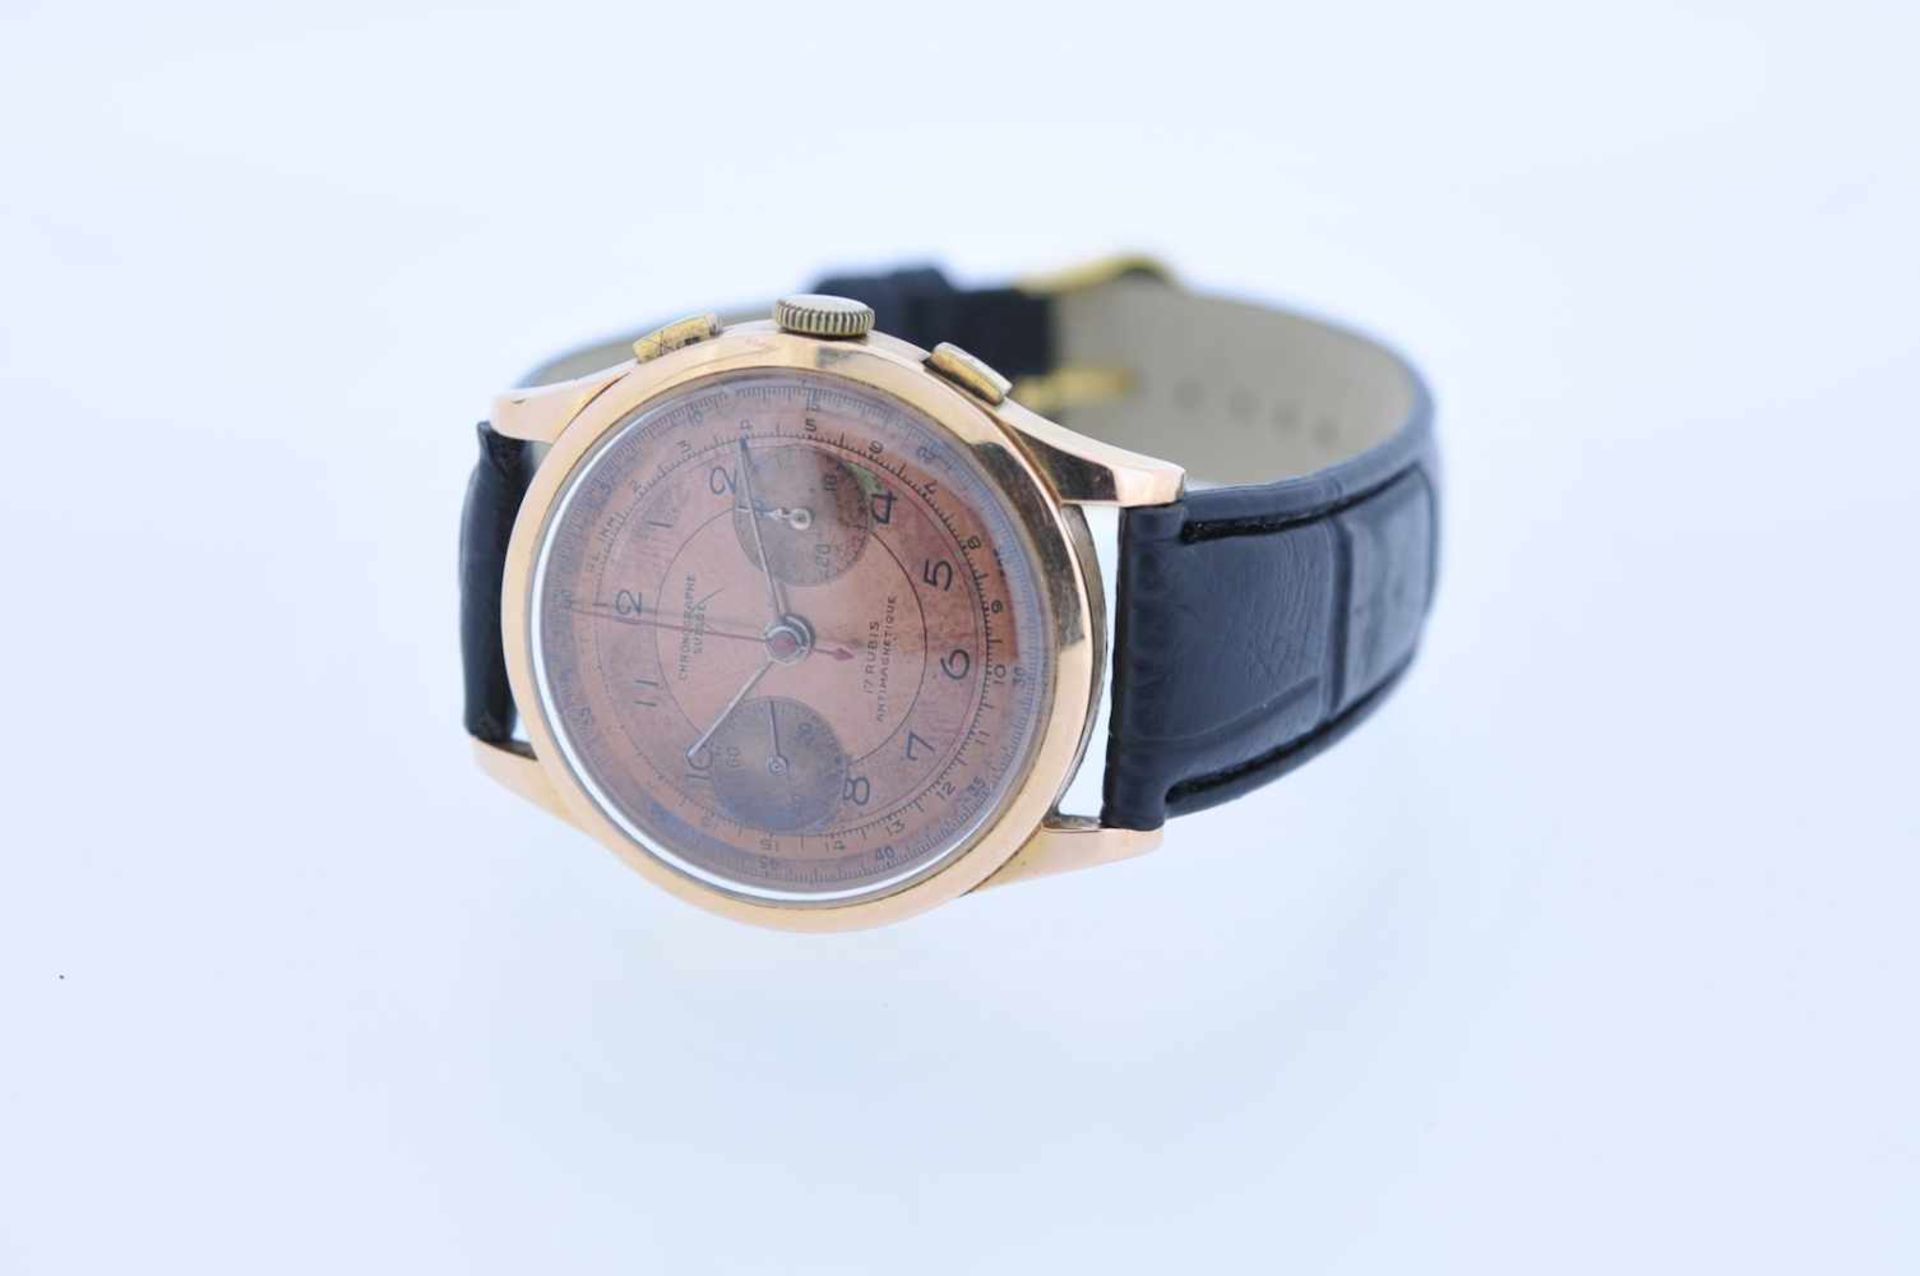 Chronographe Suisse Goldene 18 karätige Armbanduhr, Chronographe Suisse, Handaufzug, Ankerwerk, - Bild 3 aus 3